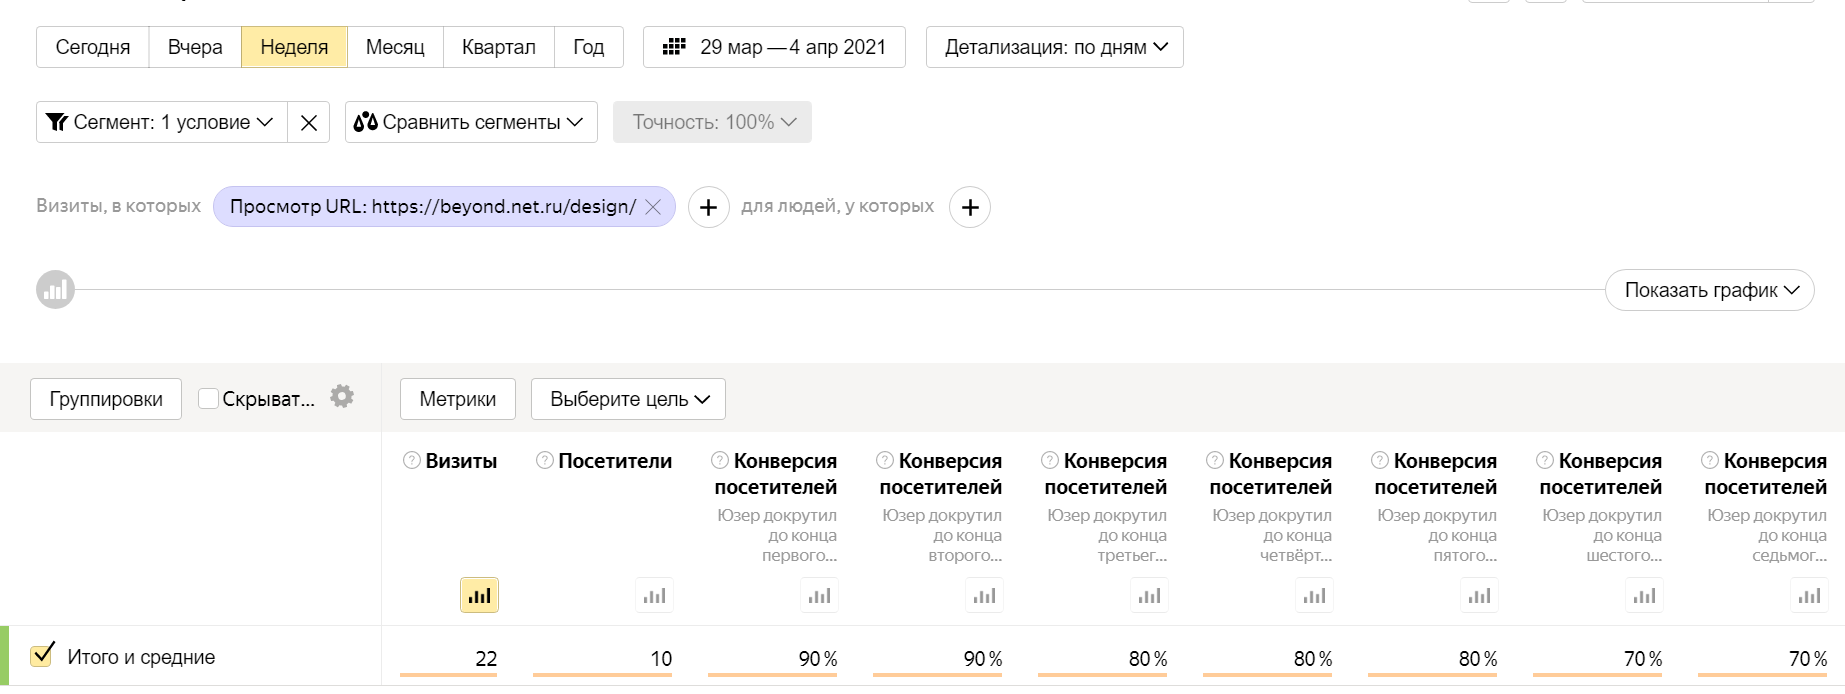 отчёт в Яндекс.Метрика по конверсиям